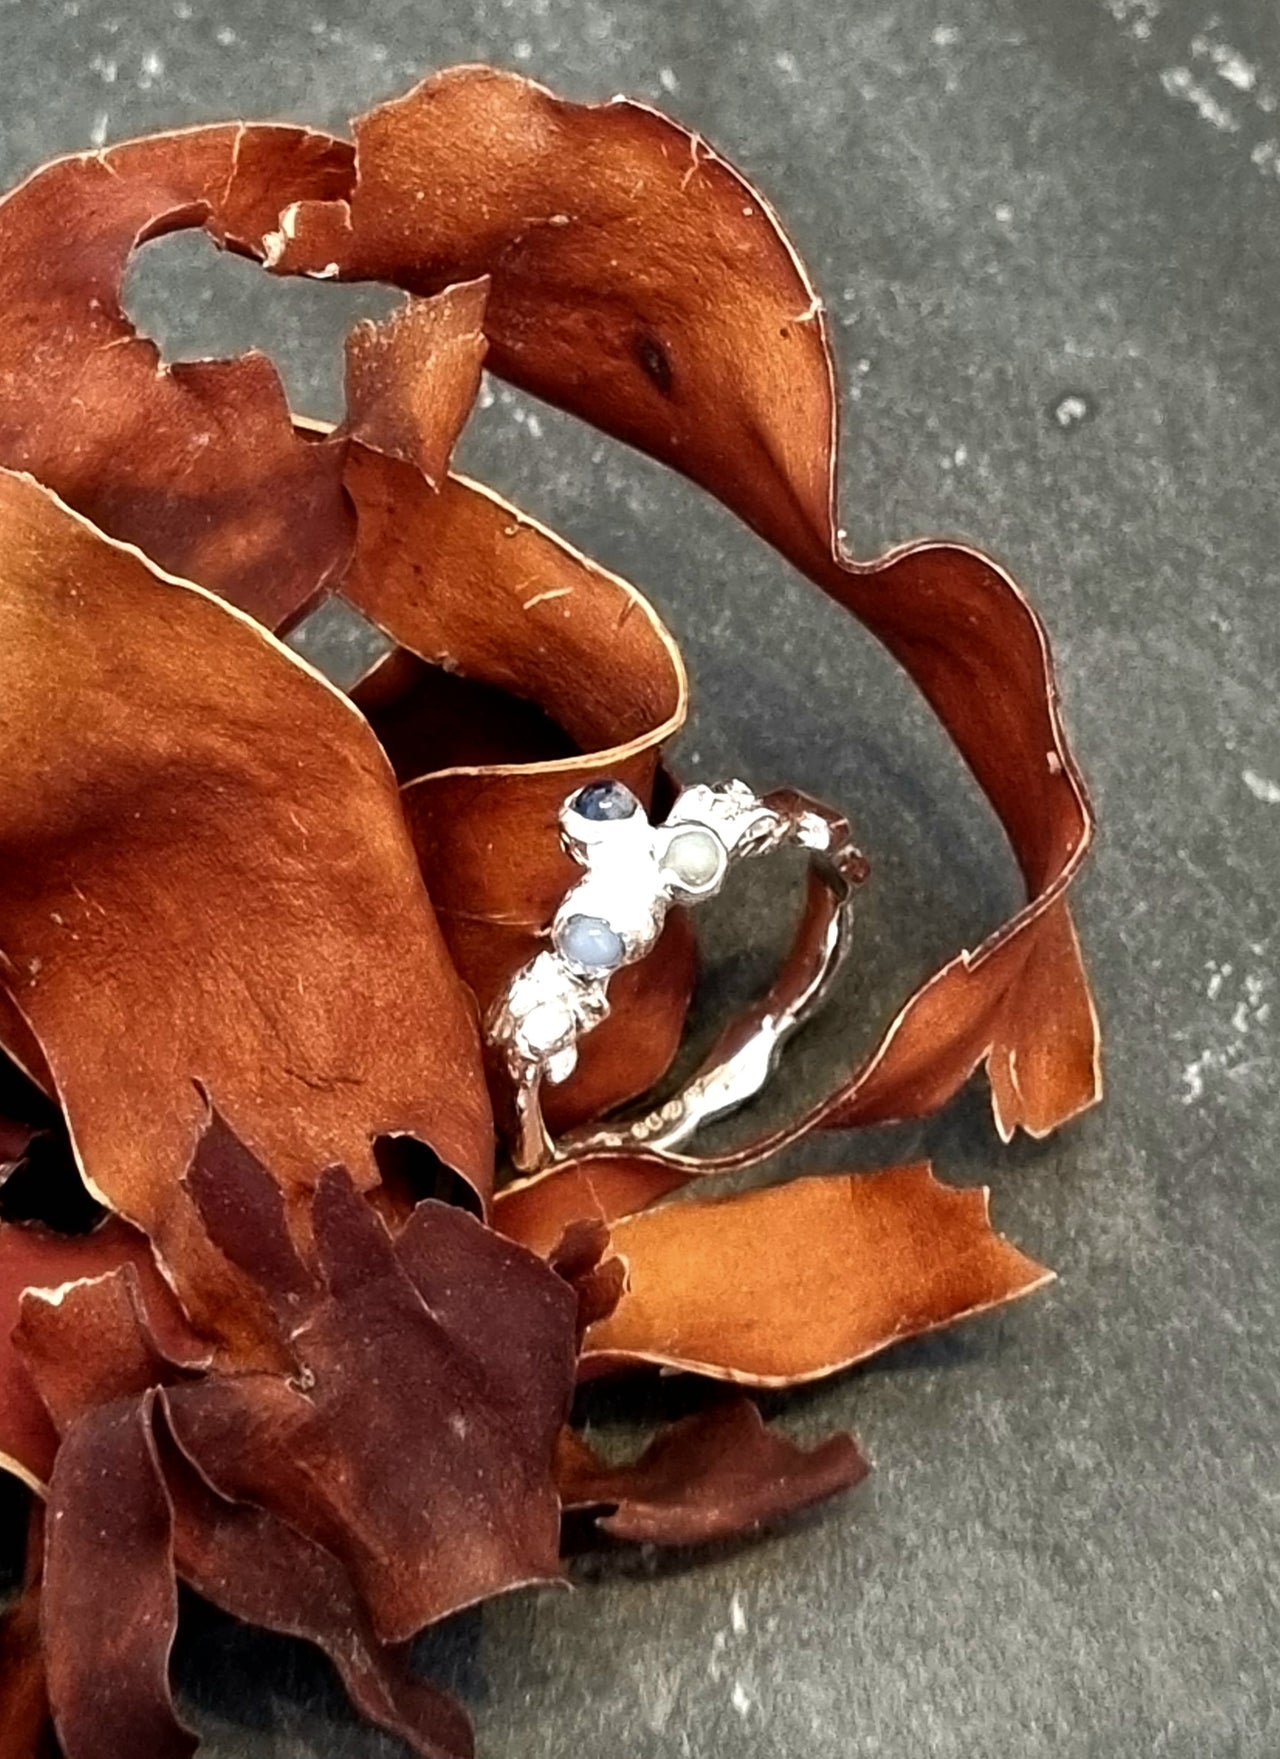 Seaweed Cluster Ring